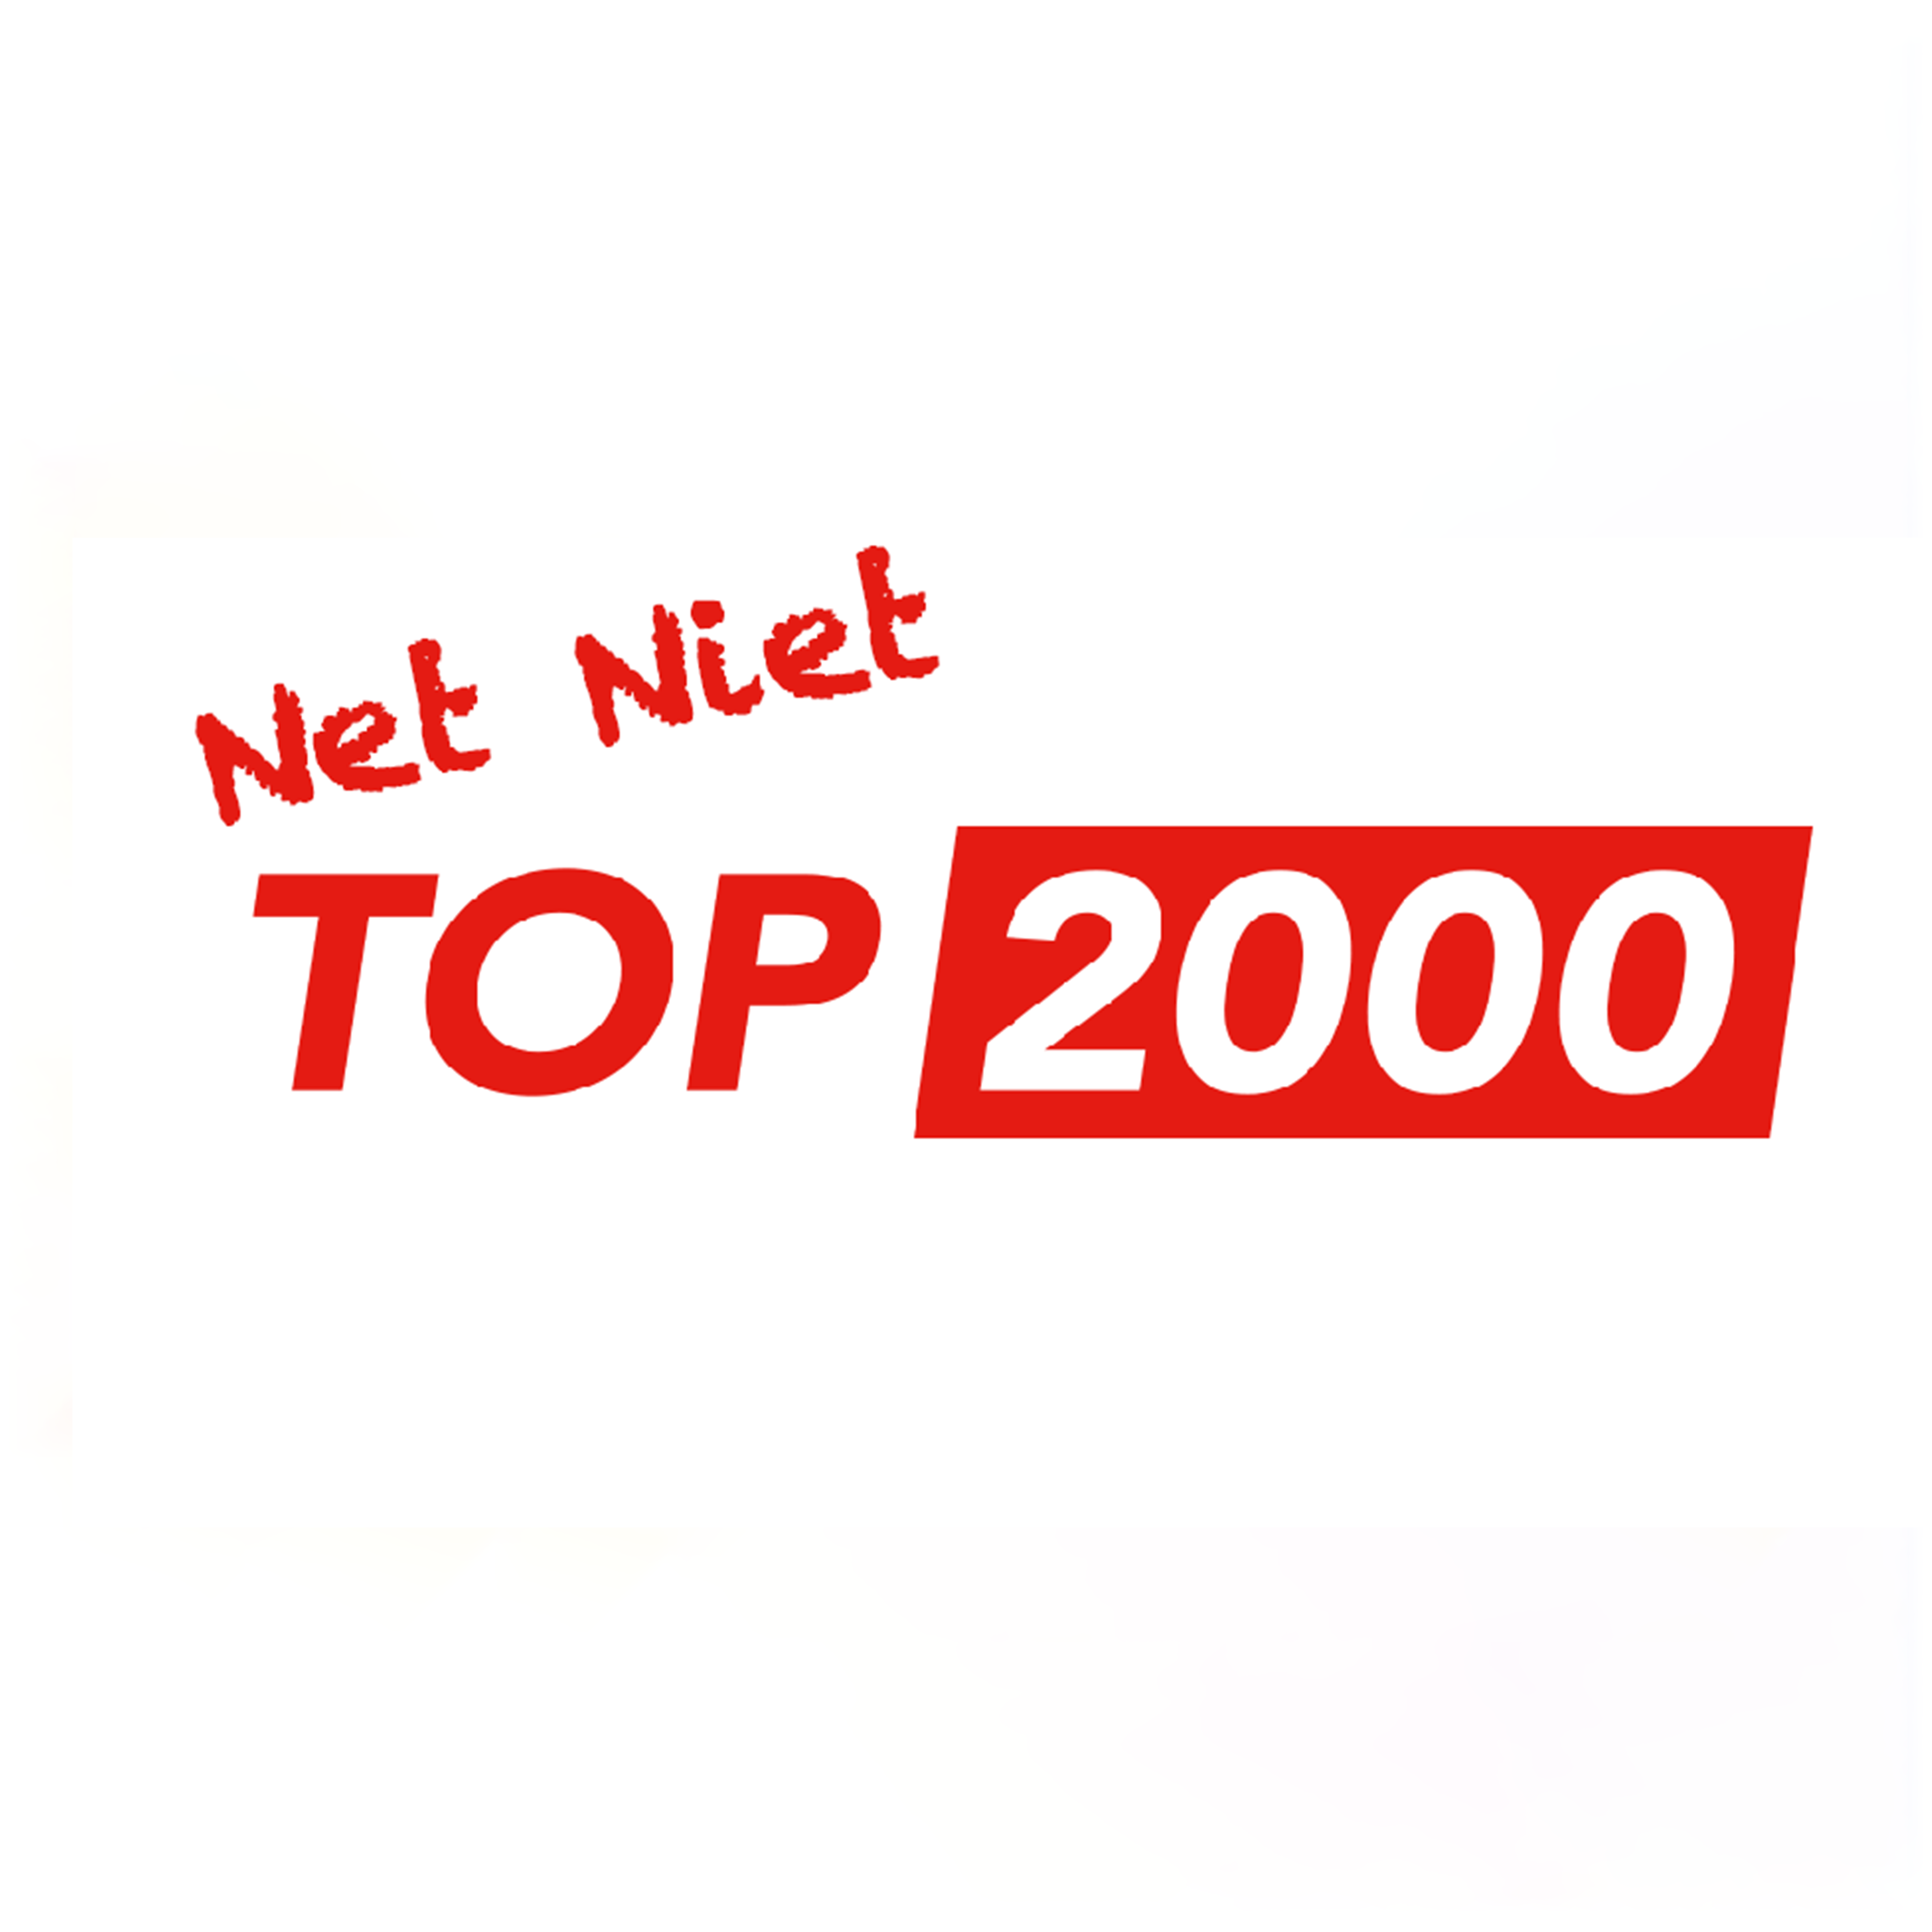 Net Niet Top 2000